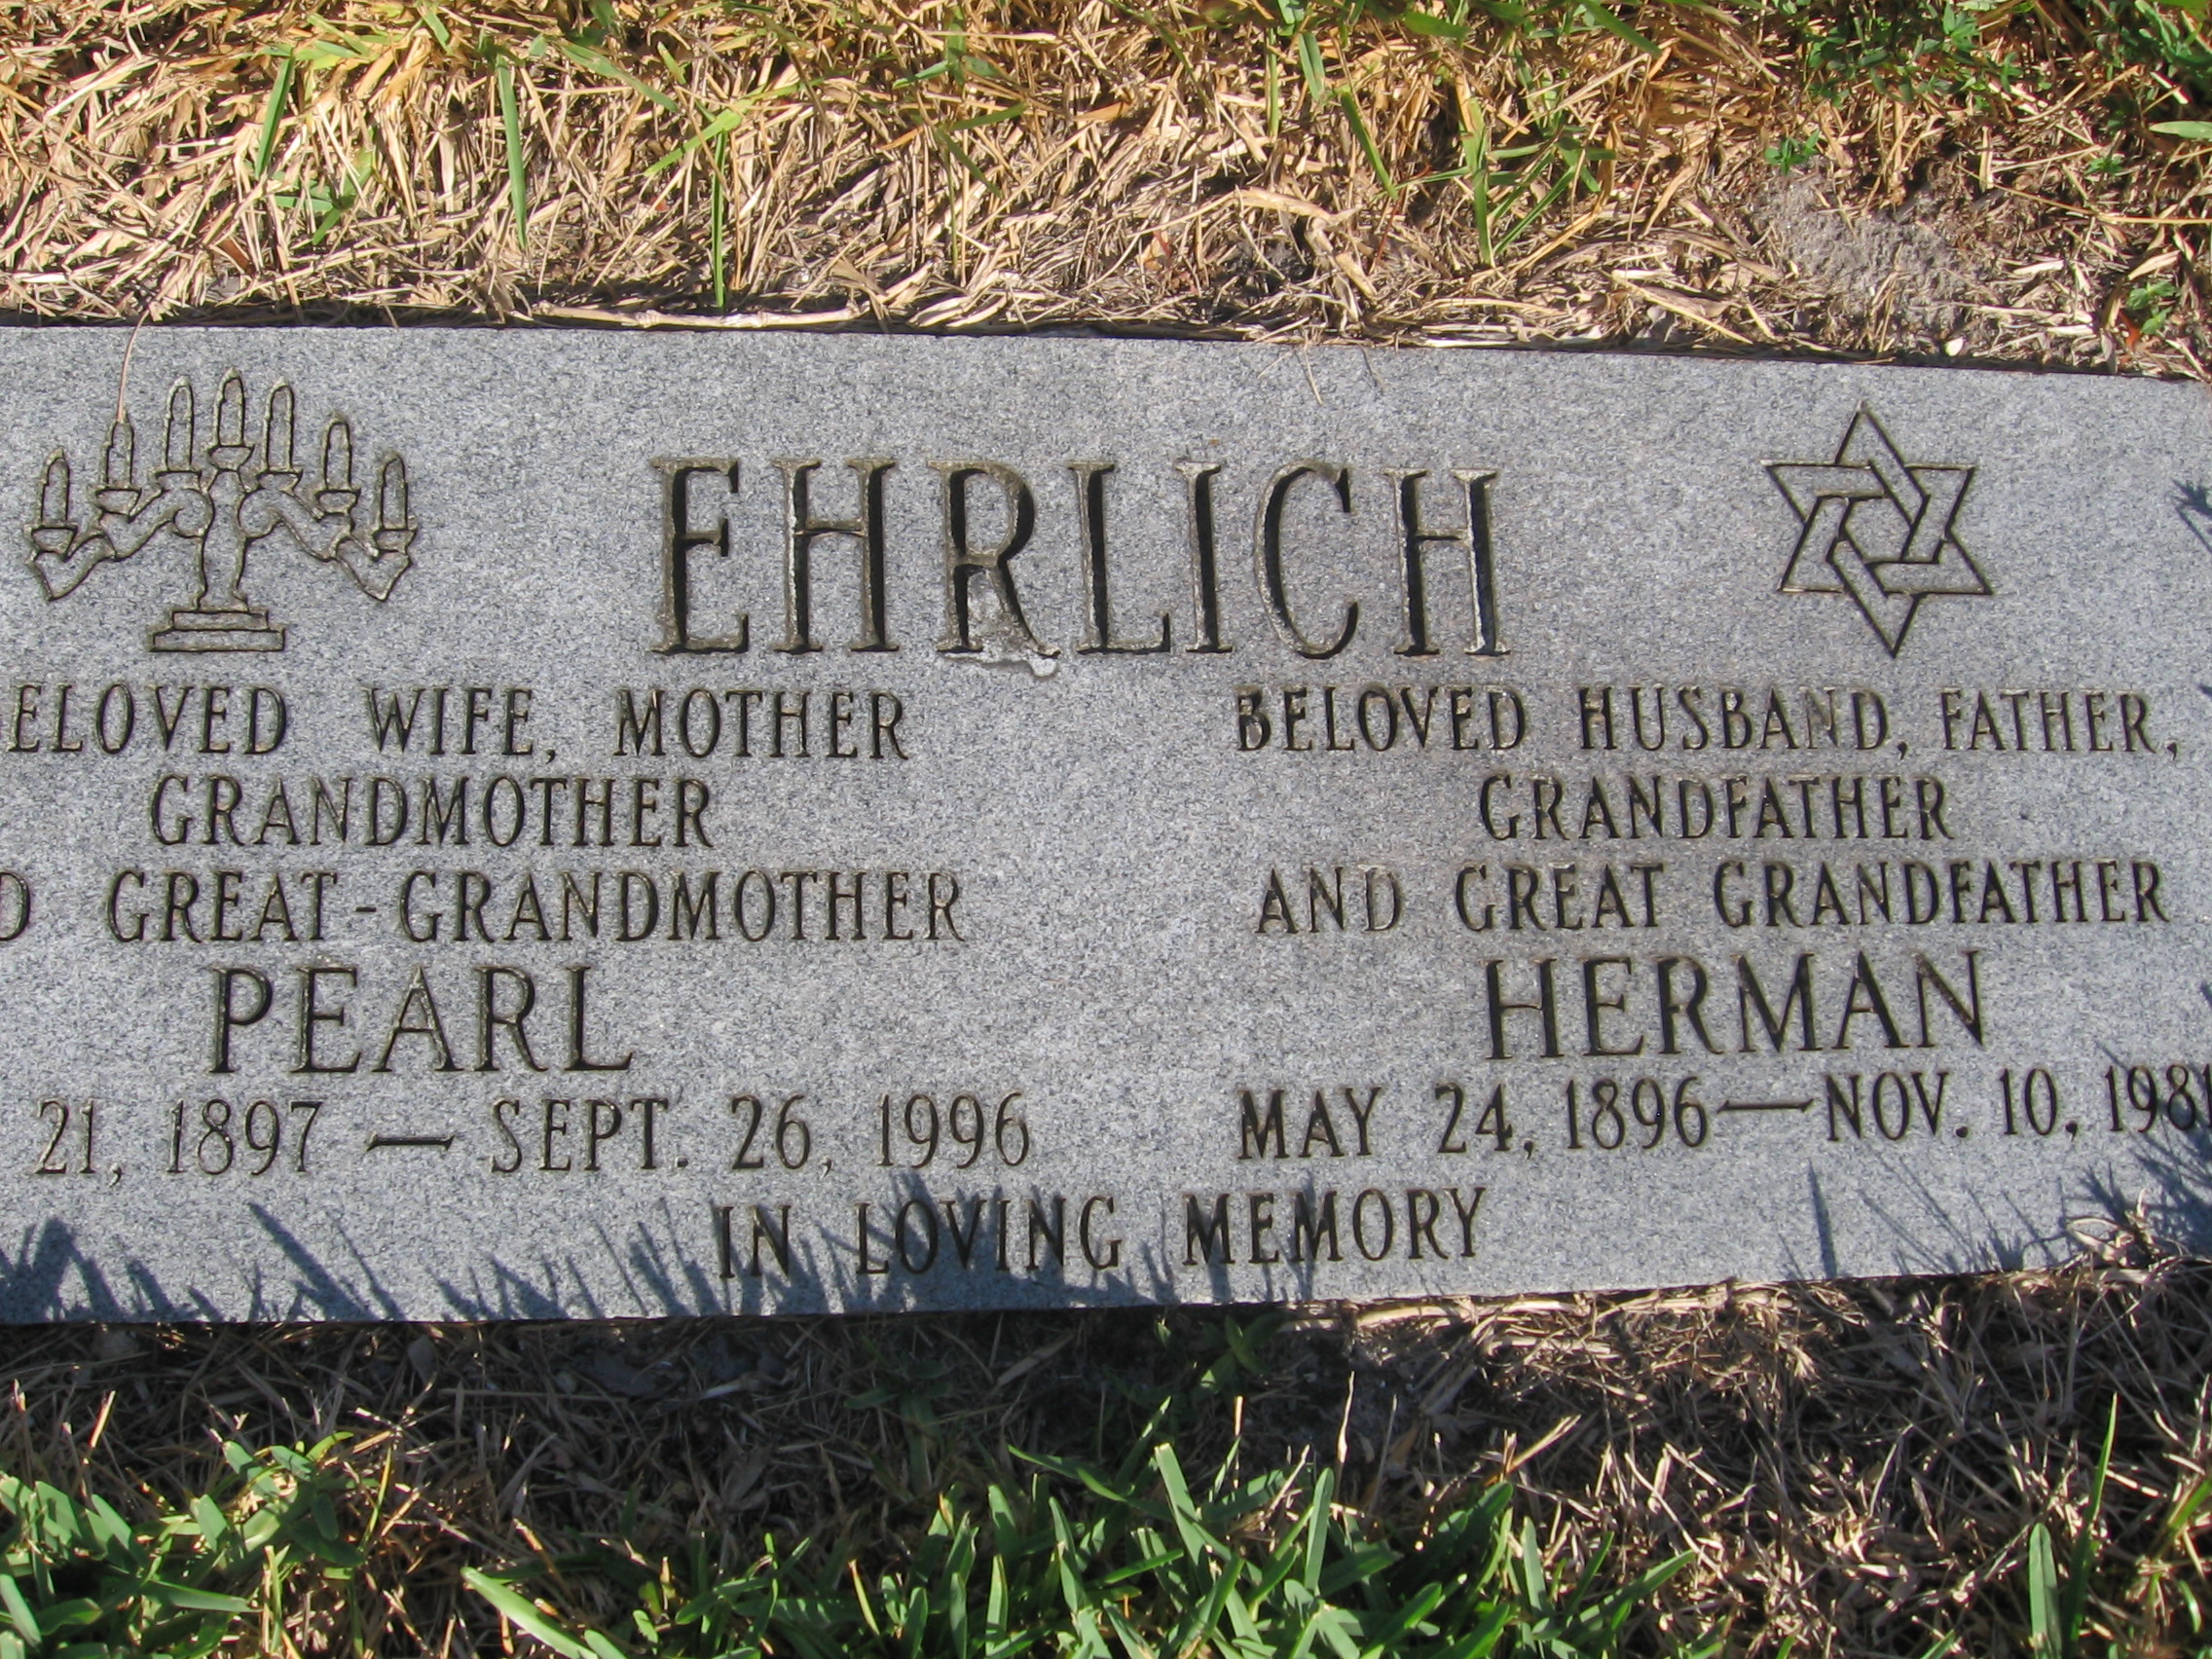 Herman Ehrlich